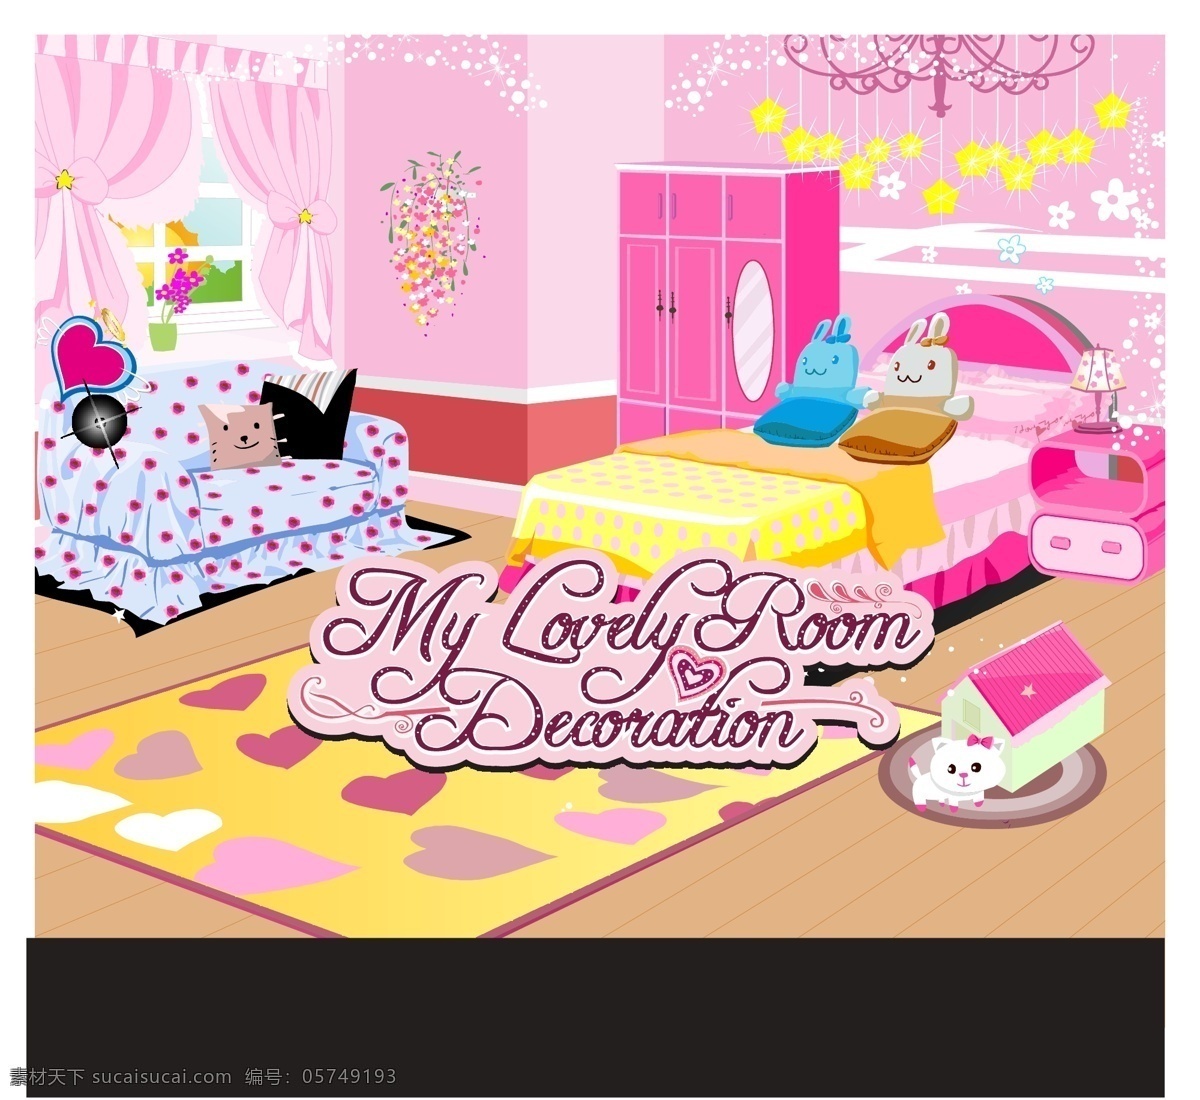 卡通房间 床 衣柜 沙发 靠垫 床头柜 灯 星星 窗户 窗帘 地毯 韩国卡通 矢量卡通 卡通设计 矢量